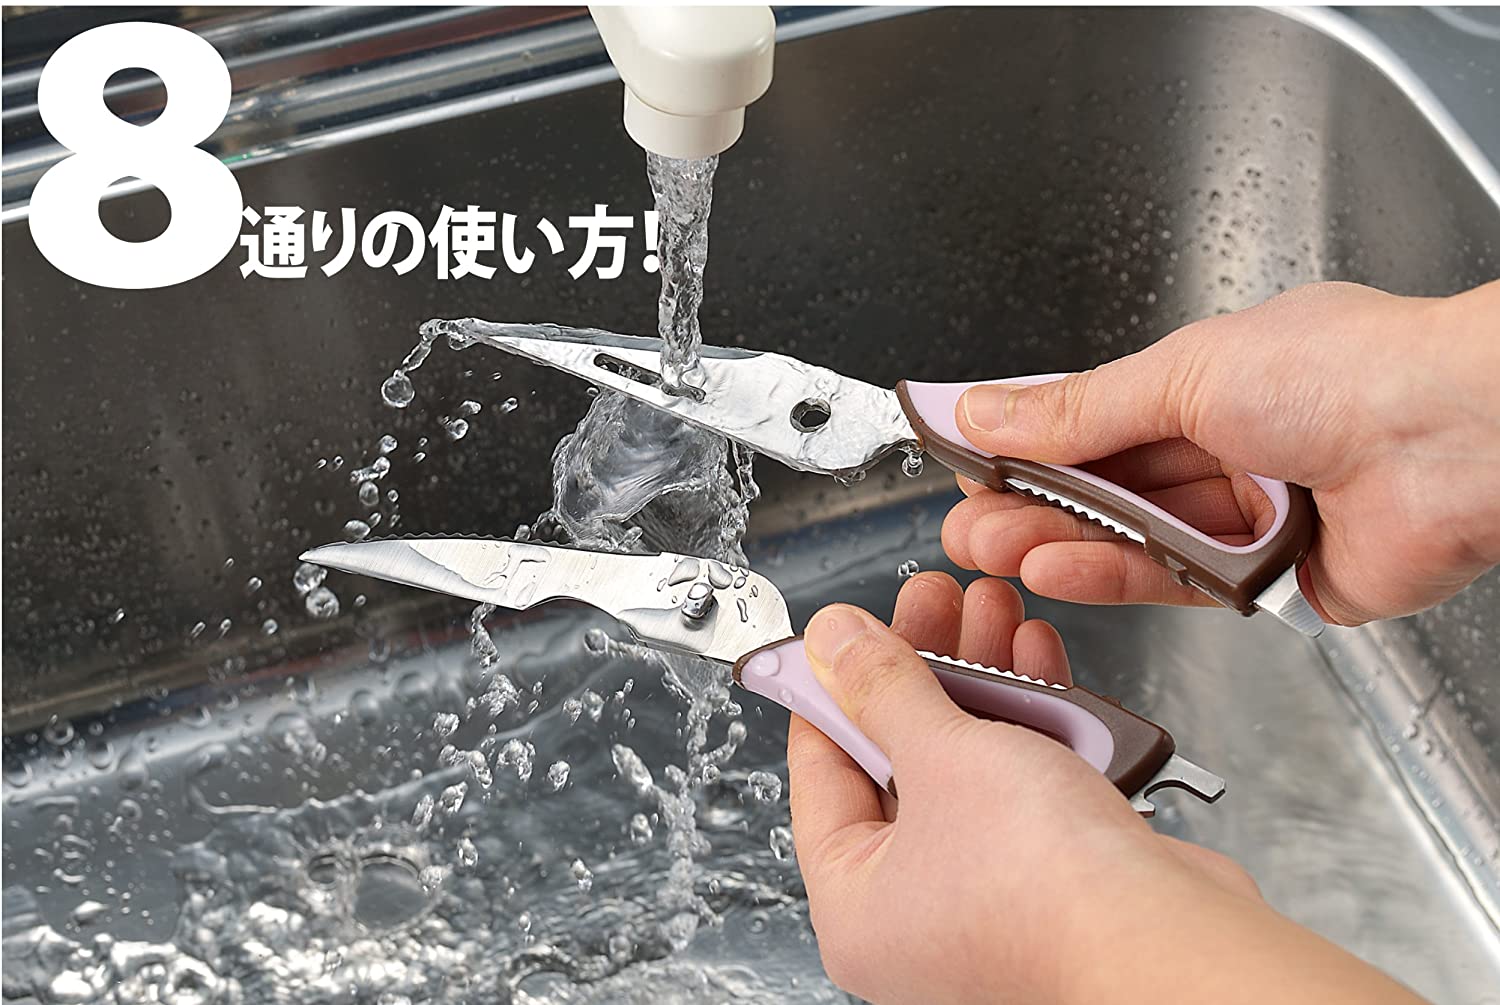 Kéo cắt vạn năng nhà bếp Hirosho Sweet Kitchen 226mm - Hàng nội địa Nhật Bản